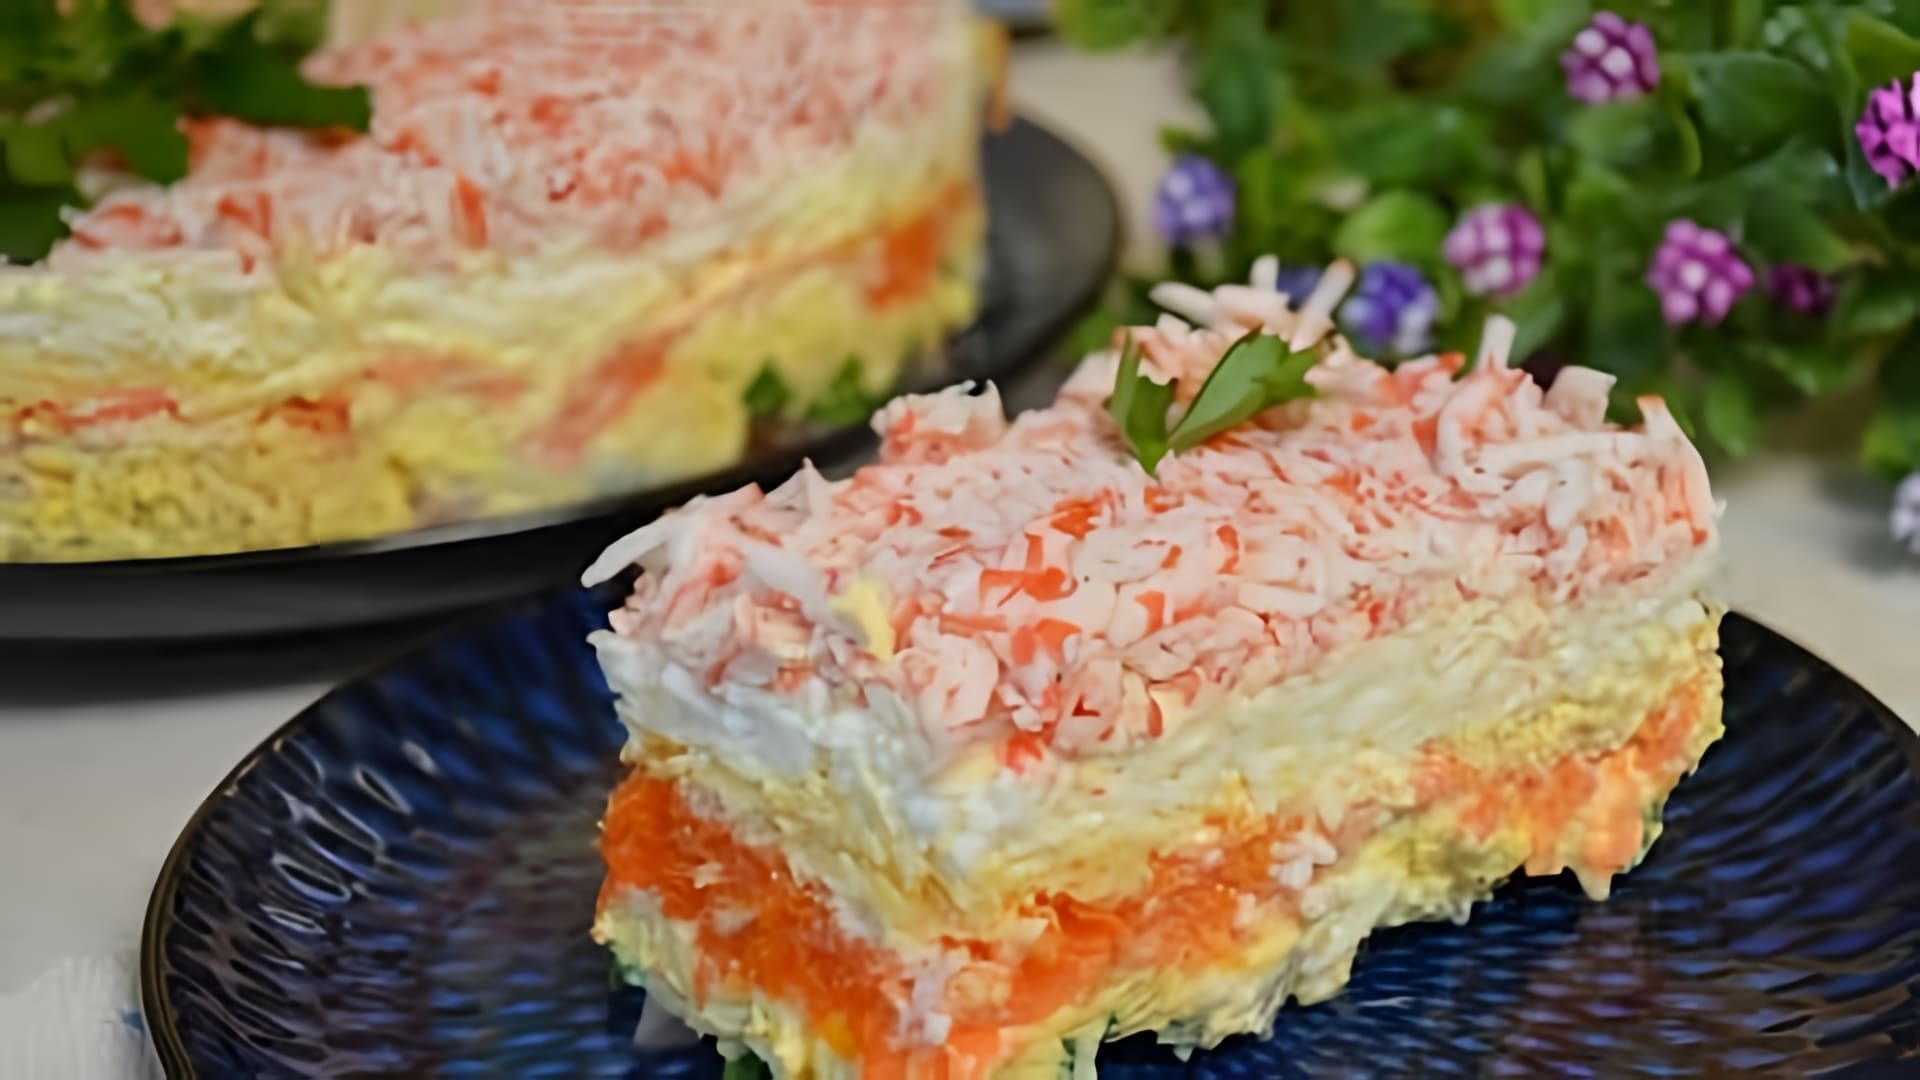 В этом видео демонстрируется процесс приготовления рыбного салата, который может стать отличным украшением праздничного стола